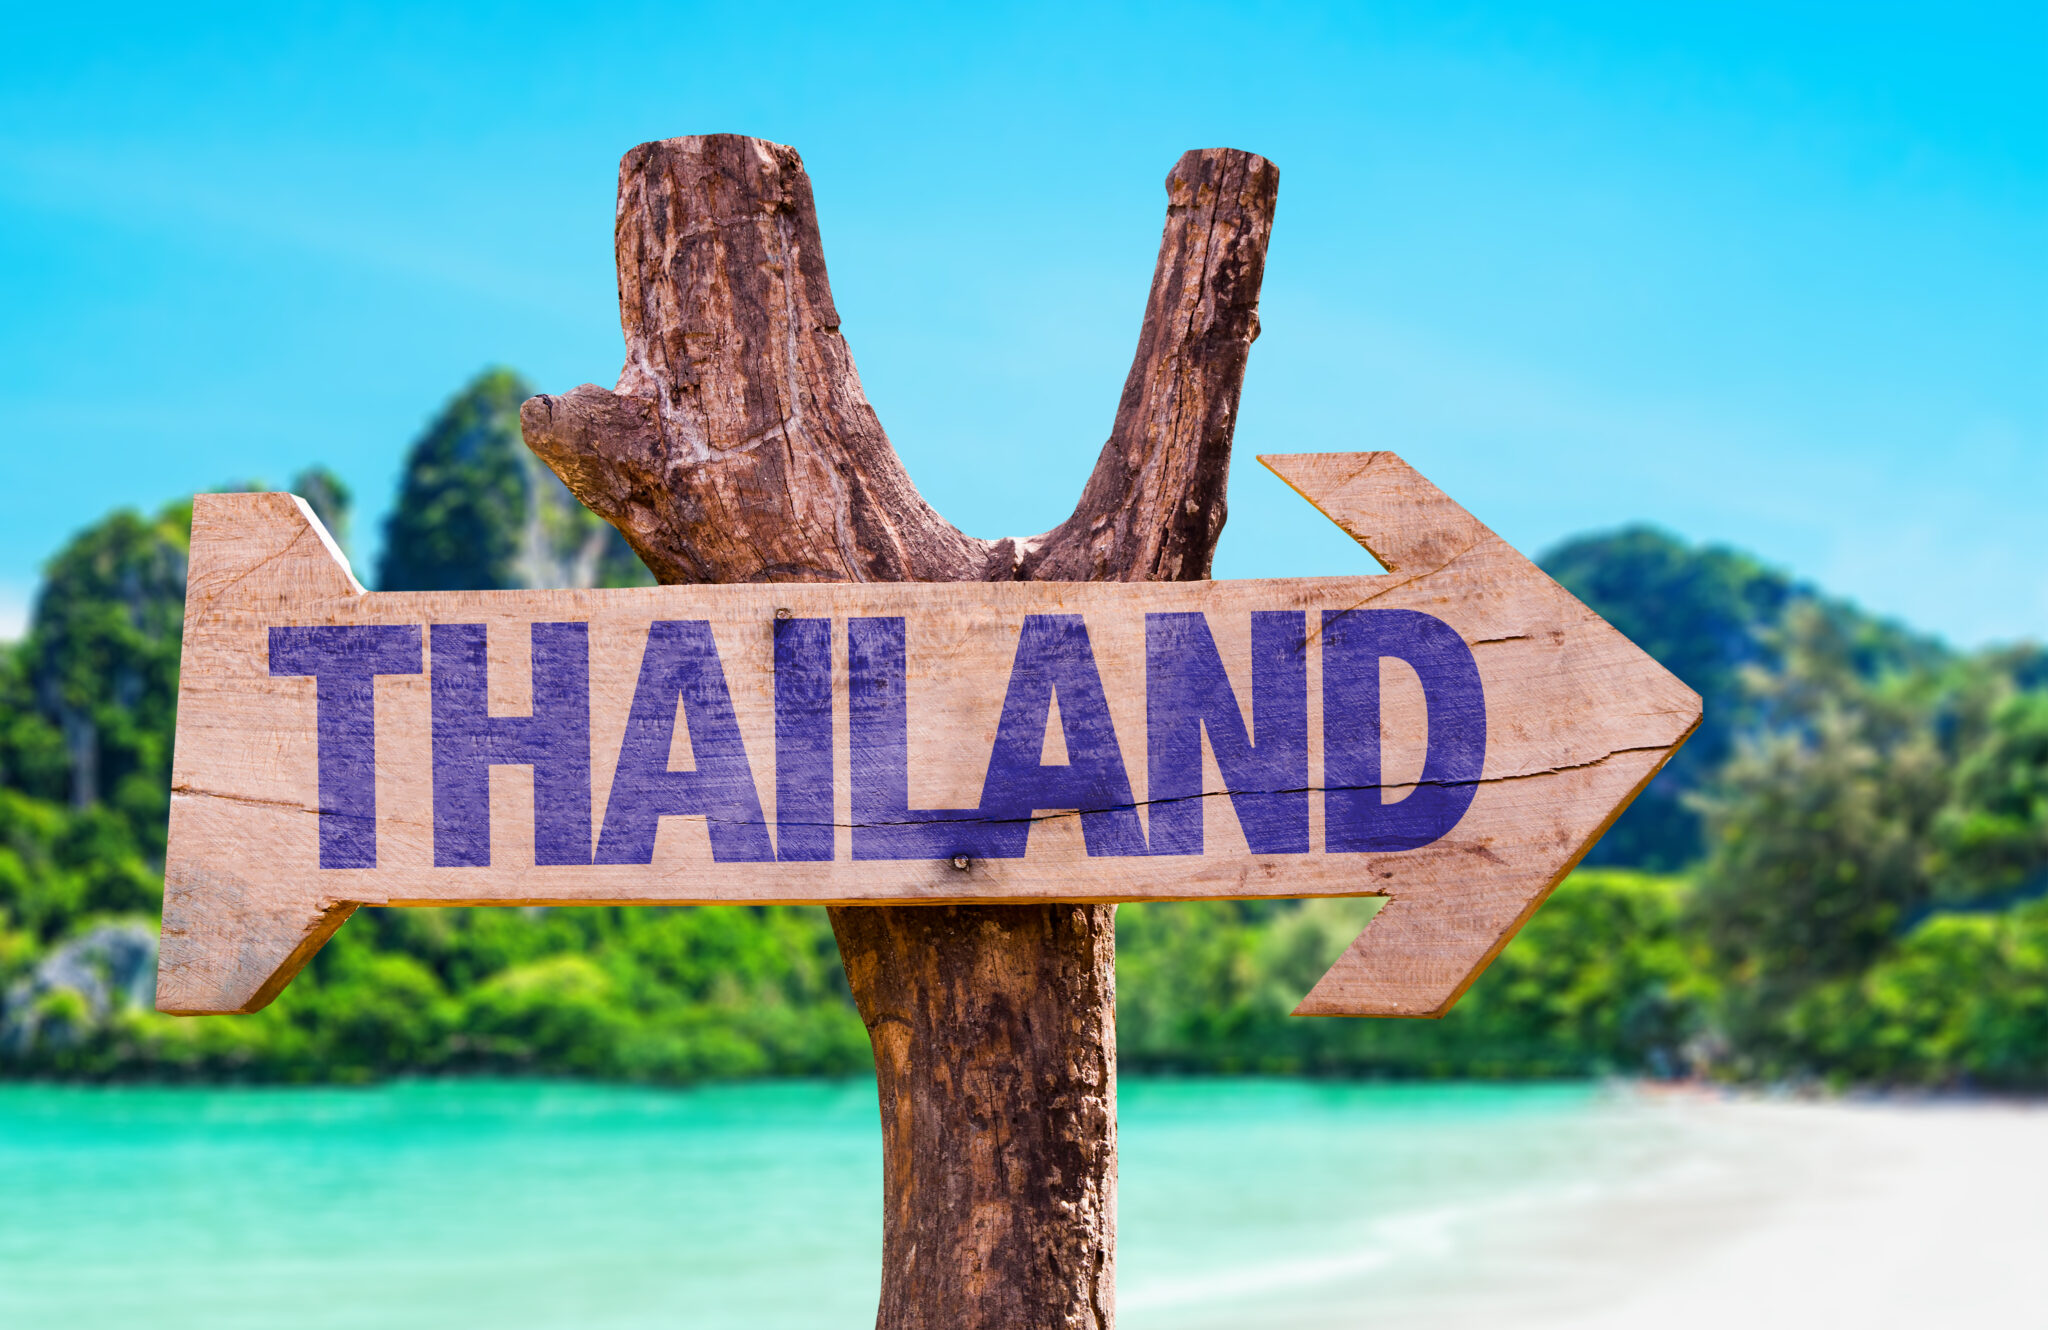 Thailand wooden sign